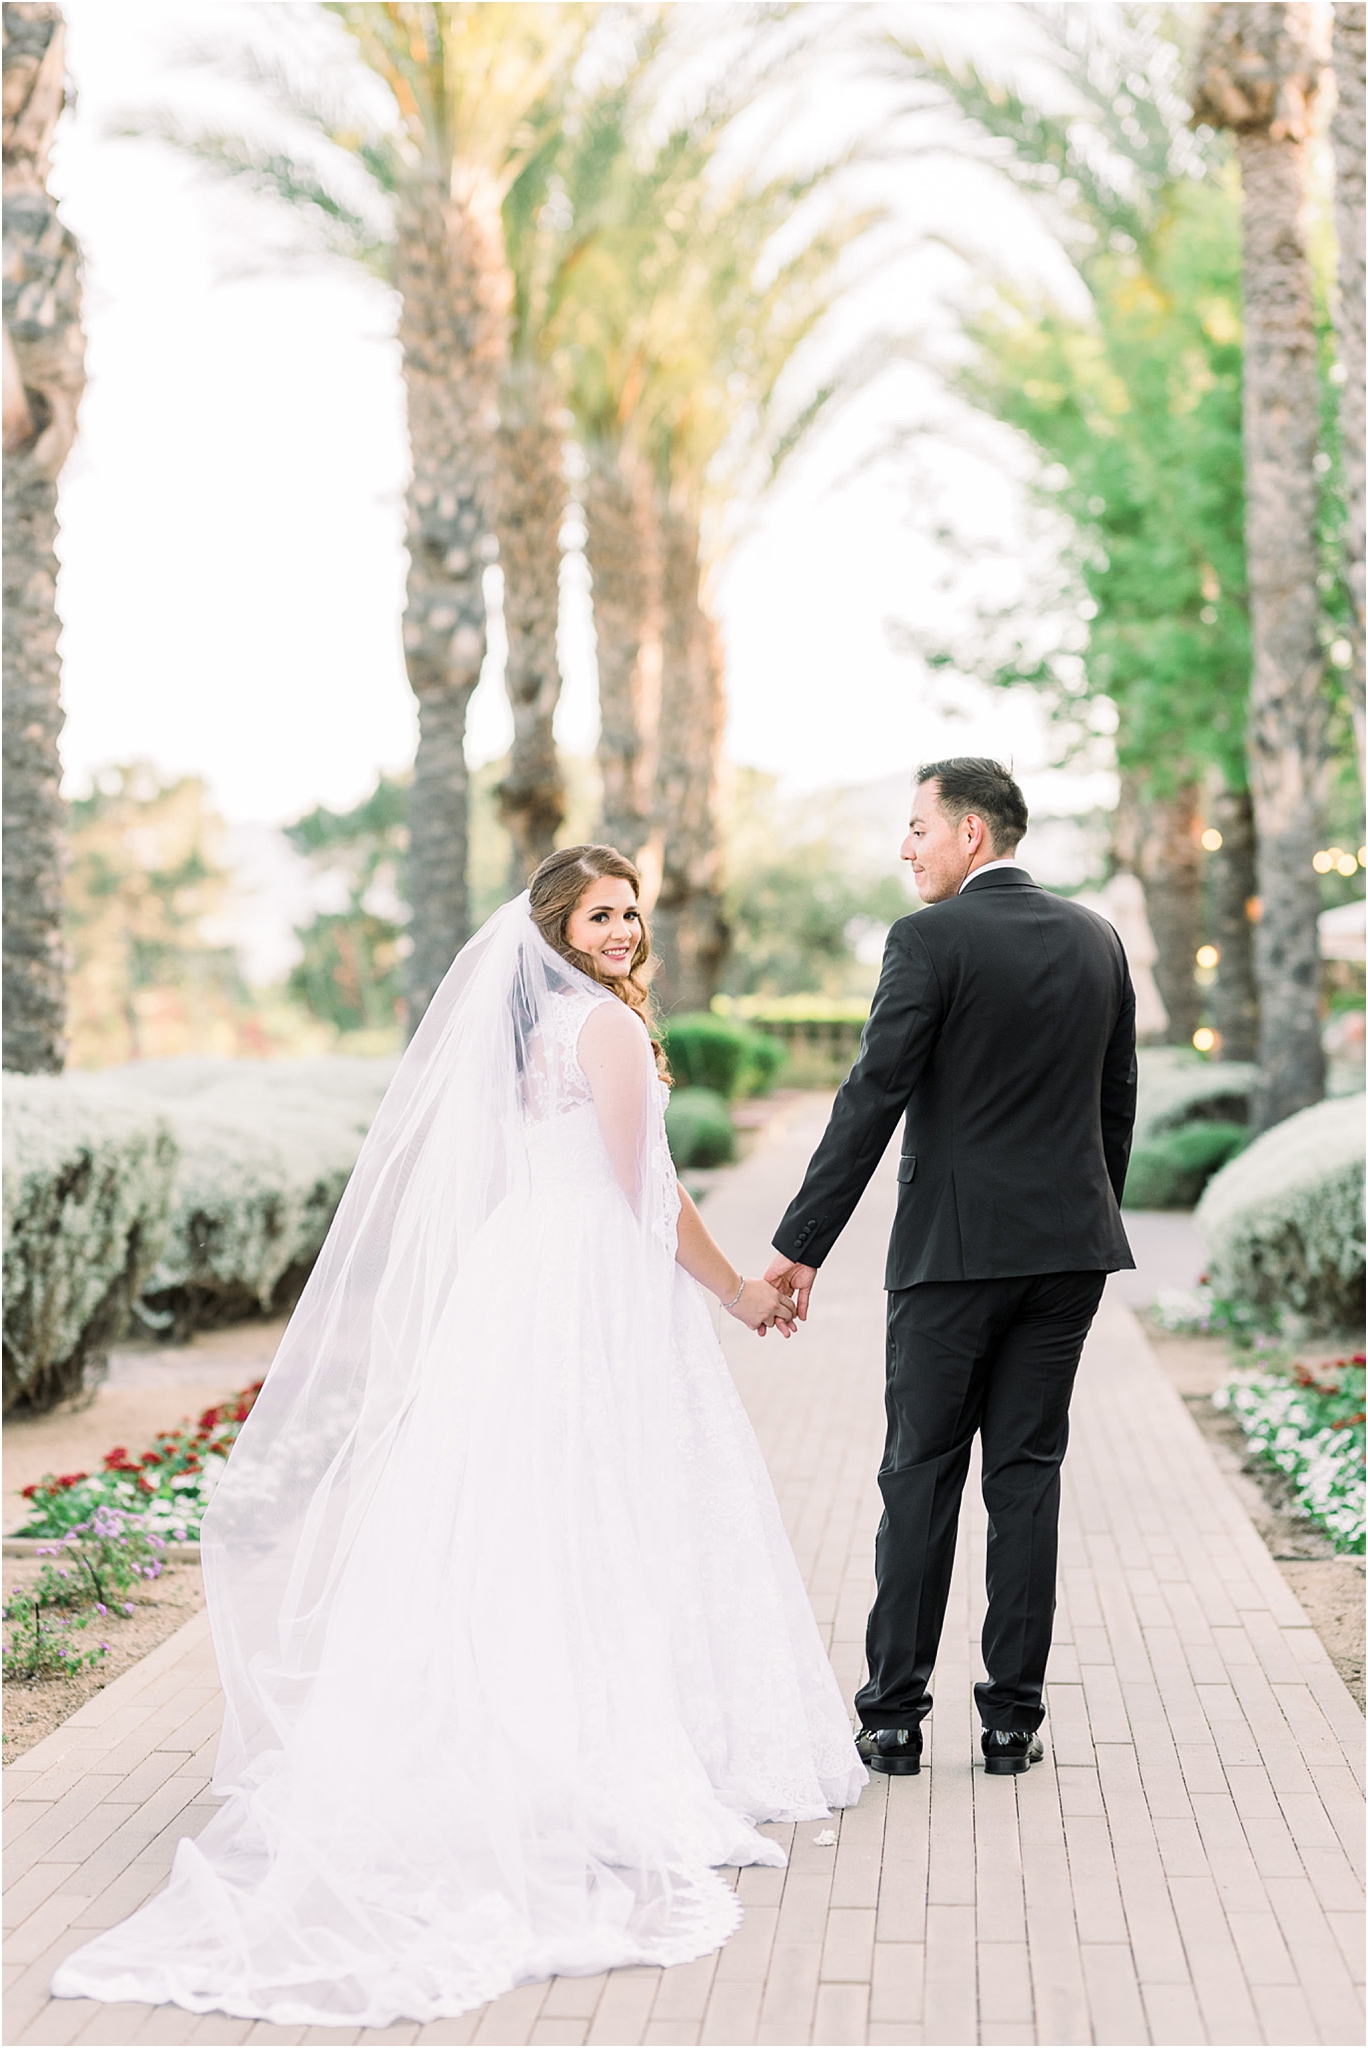 Omni Wedding Photographer | Tucson AZ | Ligia and Arturo bride and groom photos | Tucson Wedding Photographer | West End Photography